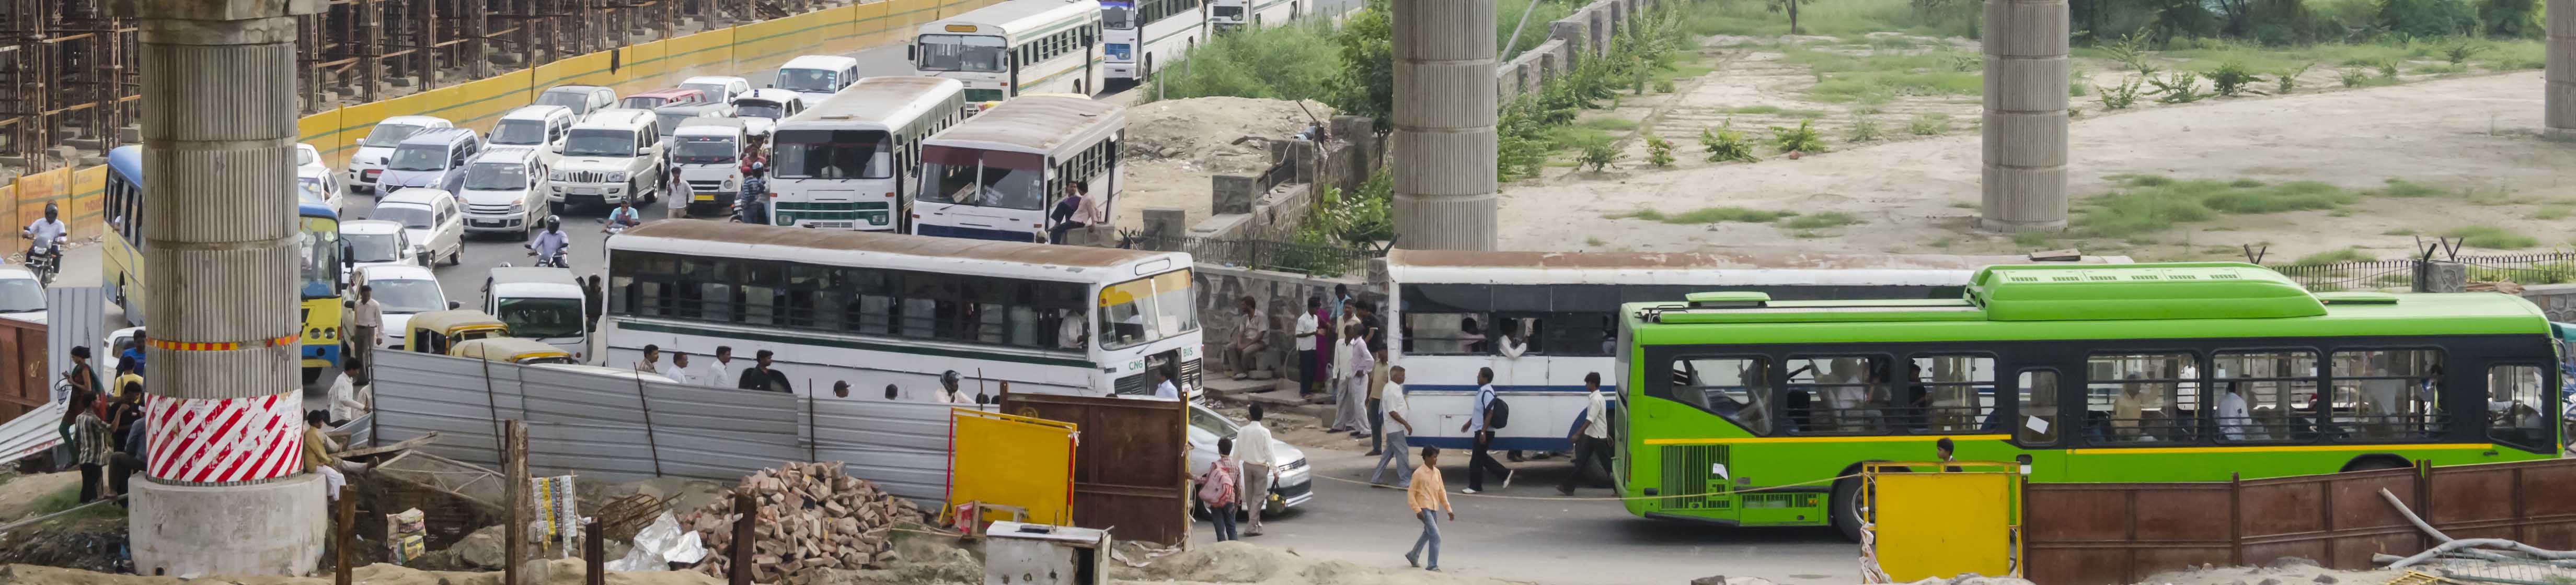 Transports en commun Inde: tous savoir sur les bus, les trains et les rickshaw dans ce pays tellement éloigné de la France